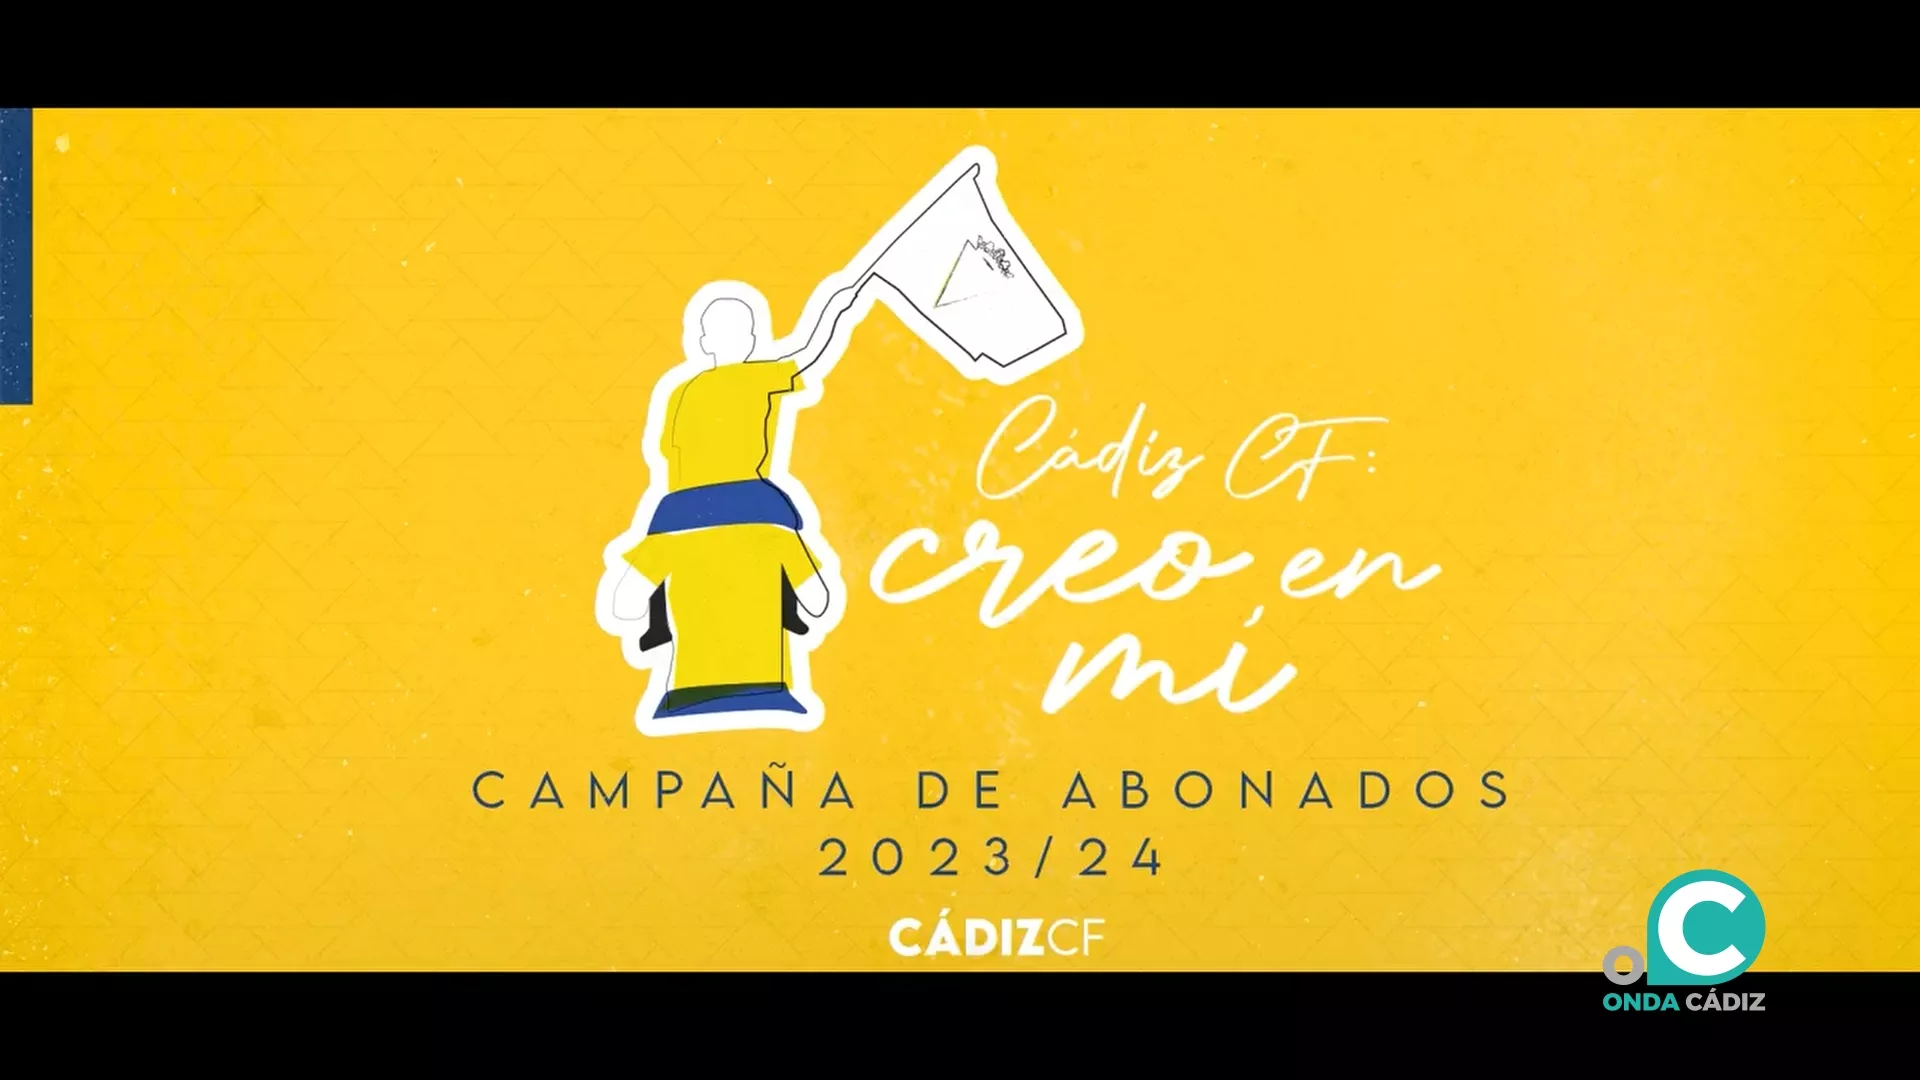 Campaña 'Creo en mi' del Cádiz CF